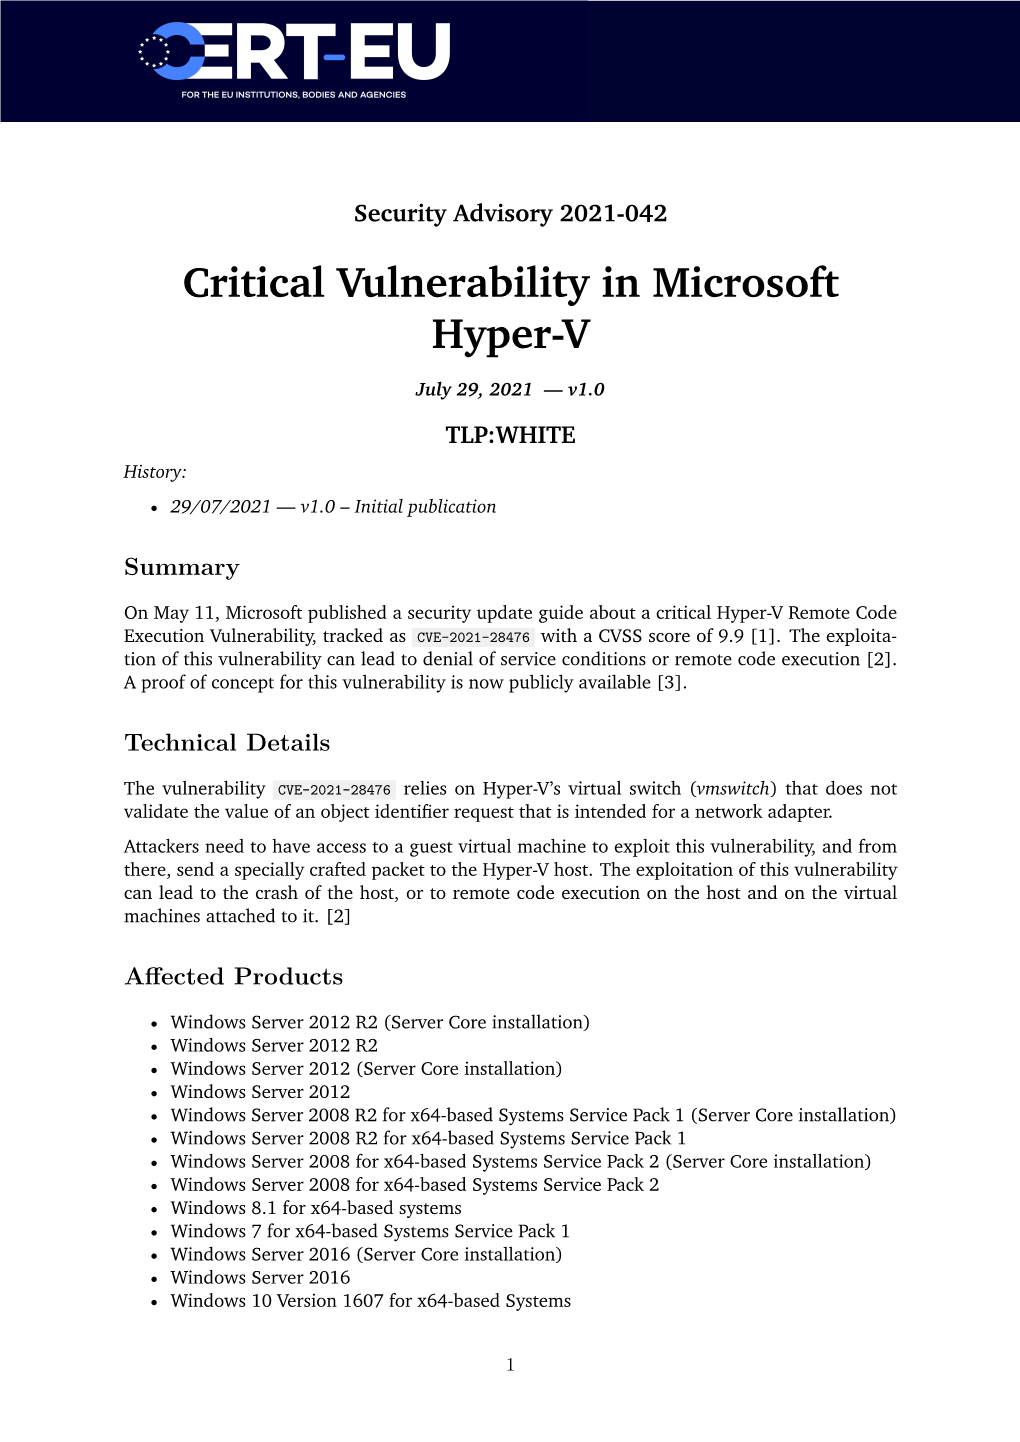 Critical Vulnerability in Microsoft Hyper-V